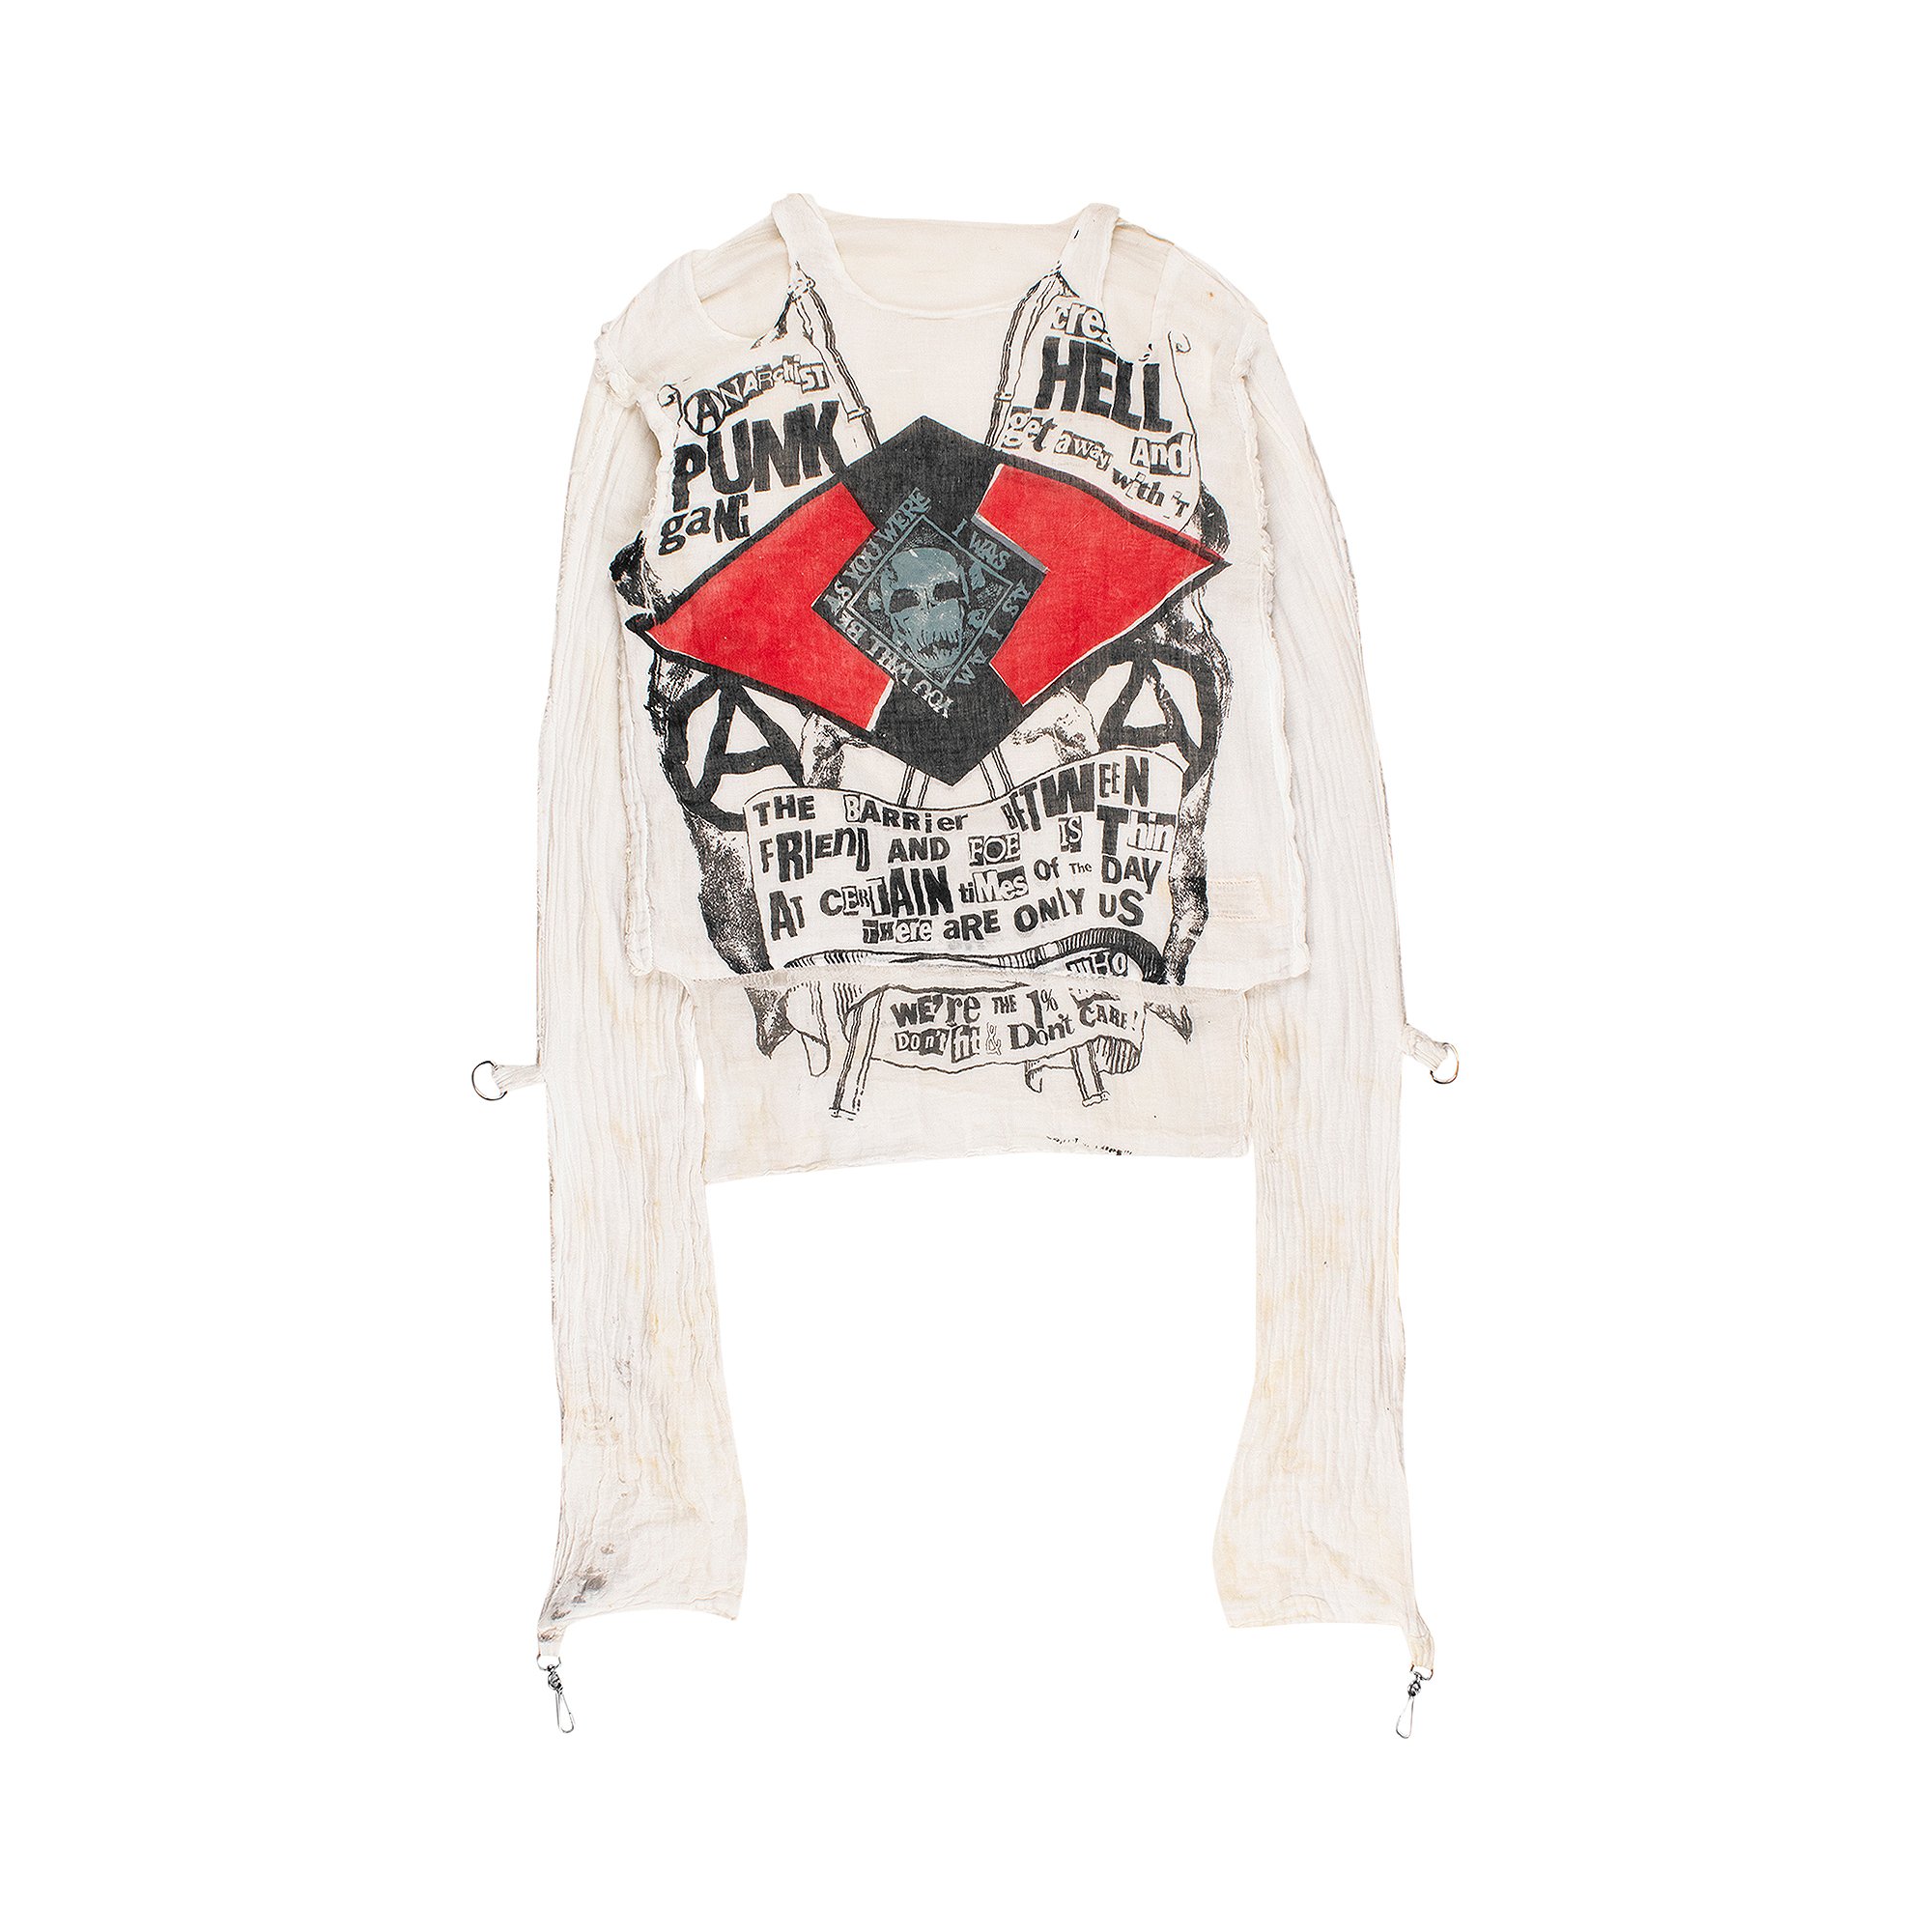 Buy Vintage Vivienne Westwood Original Punk Gang Muslin Shirt